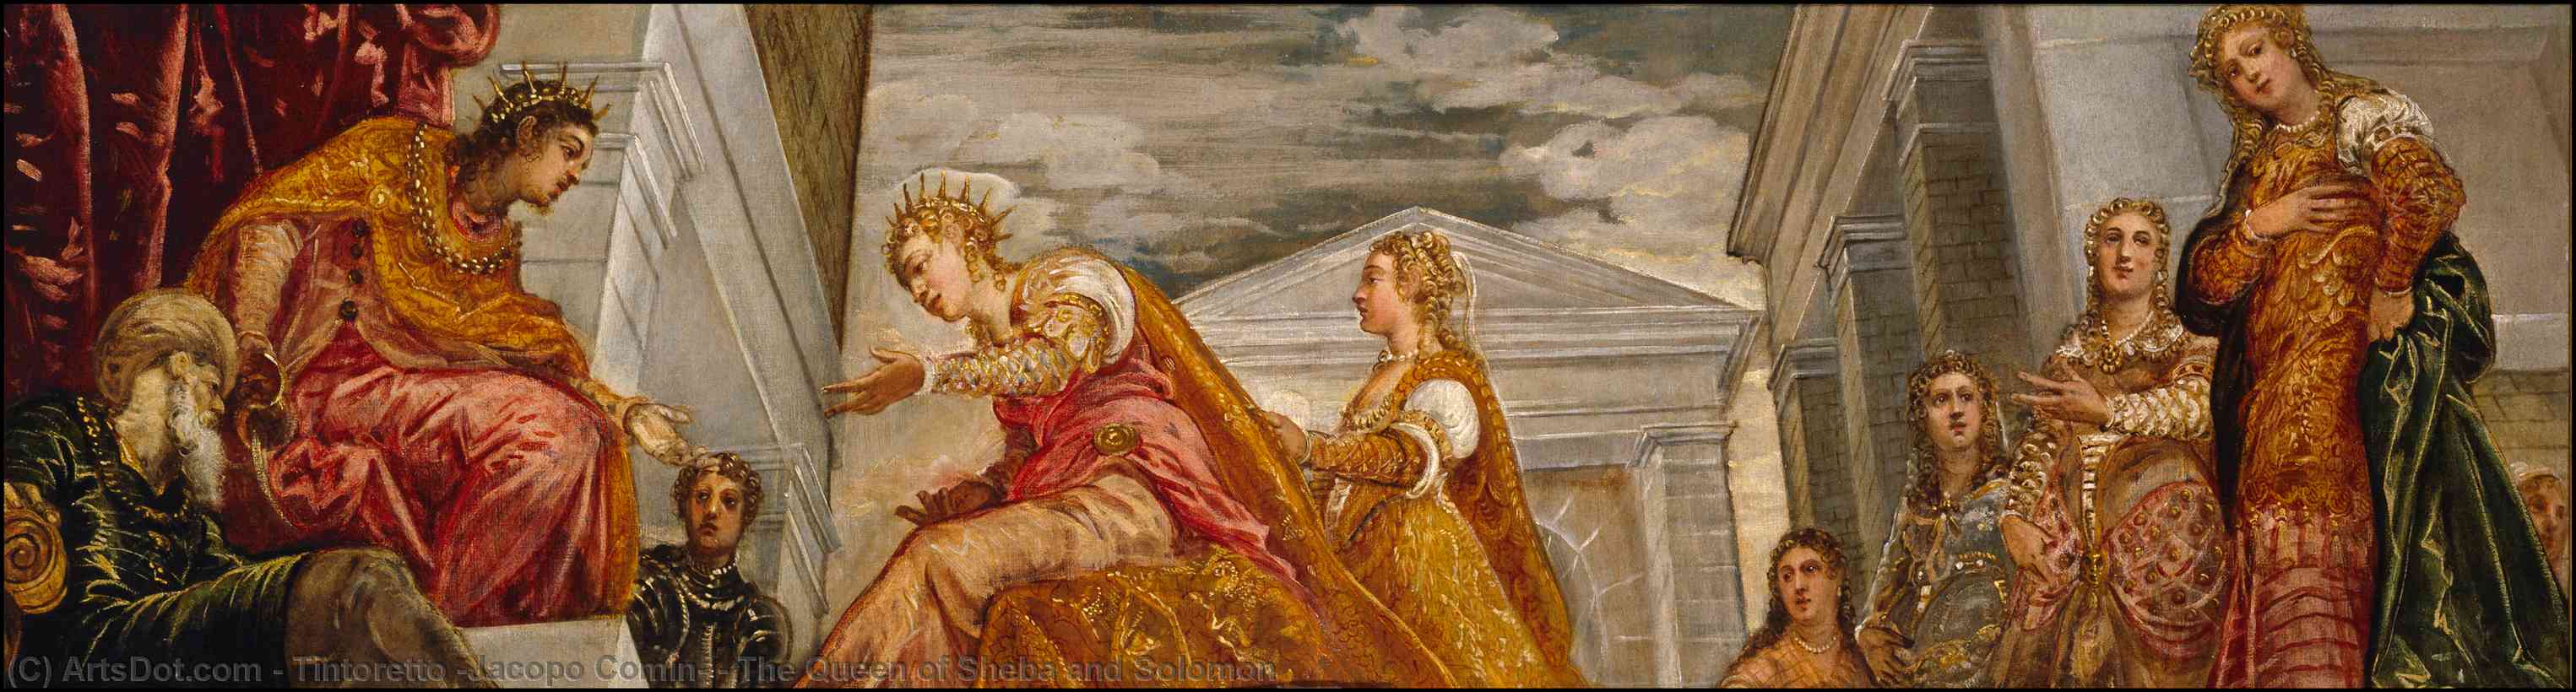 Wikioo.org - Bách khoa toàn thư về mỹ thuật - Vẽ tranh, Tác phẩm nghệ thuật Tintoretto (Jacopo Comin) - The Queen of Sheba and Solomon